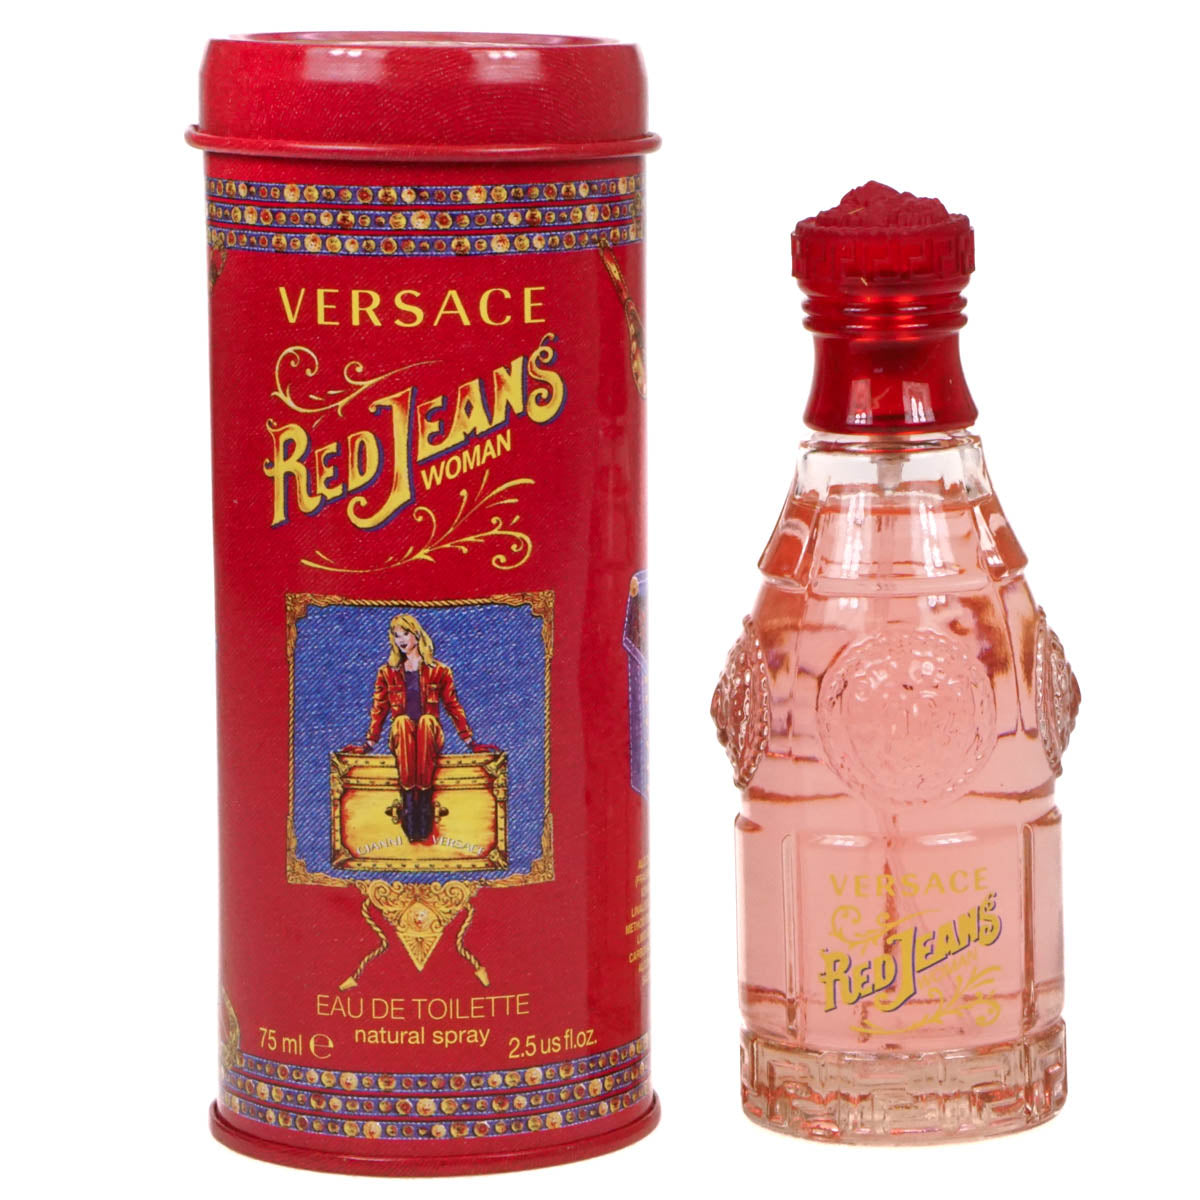 Versace Red Jeans Woman 75ml Eau De Toilette